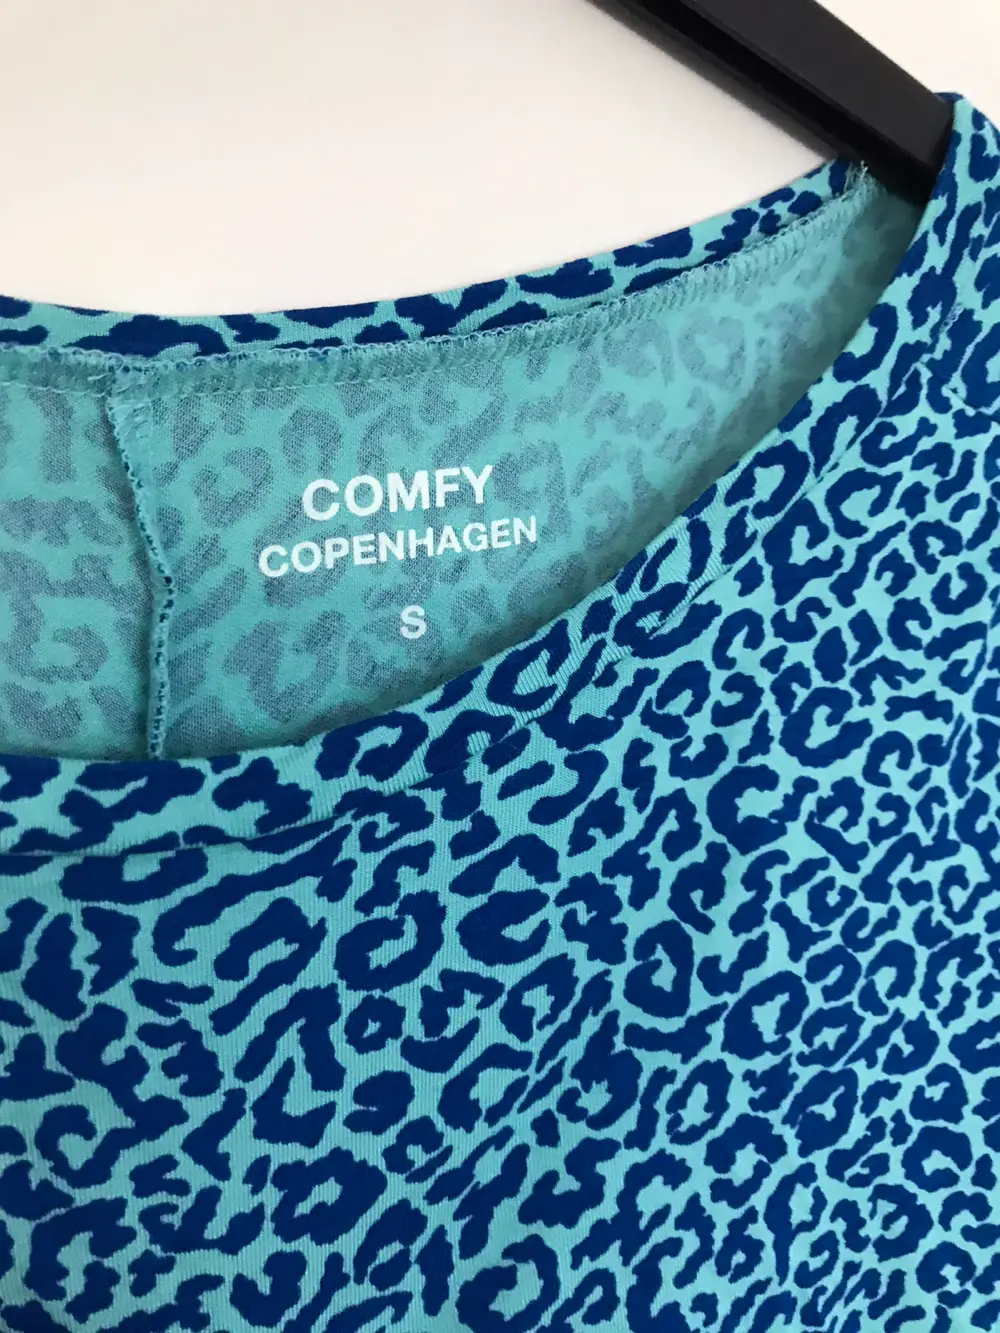 Køb Comfy Copenhagen størrelse S af Holmstrøm B på Reshopper Shop secondhand til børn, mor og bolig